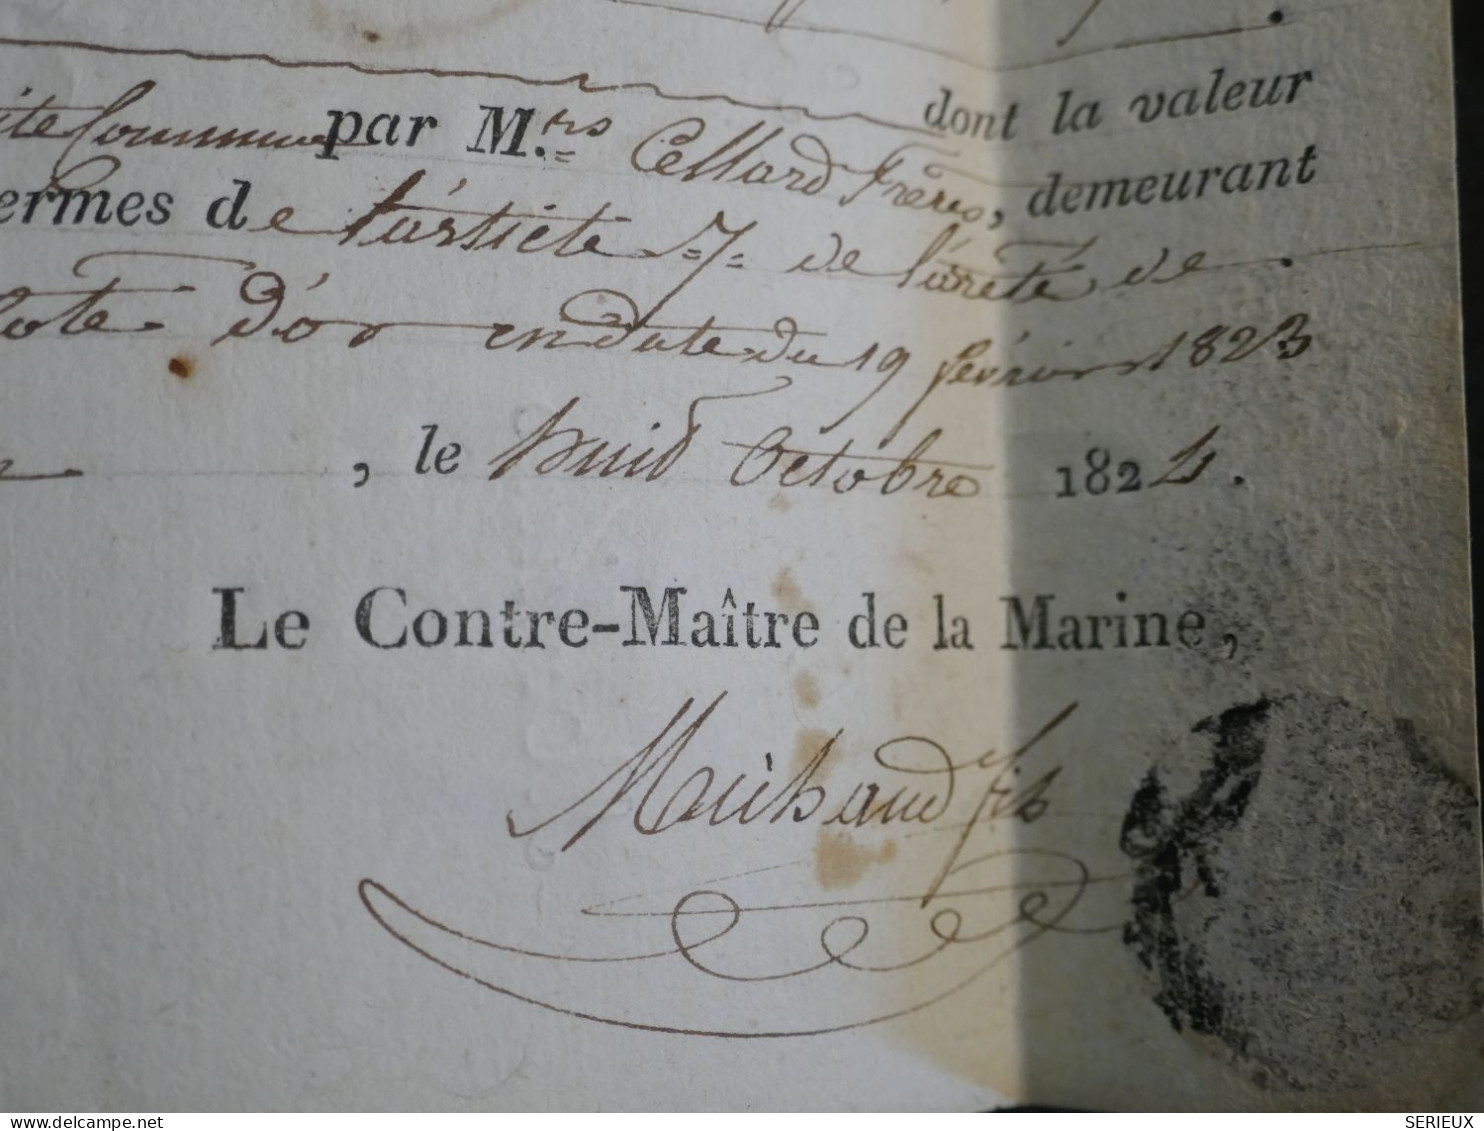 DN15 FRANCE   LETTRE MARINE ROYALE  RRR 1824 DIJON A FONTAINE  + AFF. INTERESSANT++ - 1801-1848: Précurseurs XIX